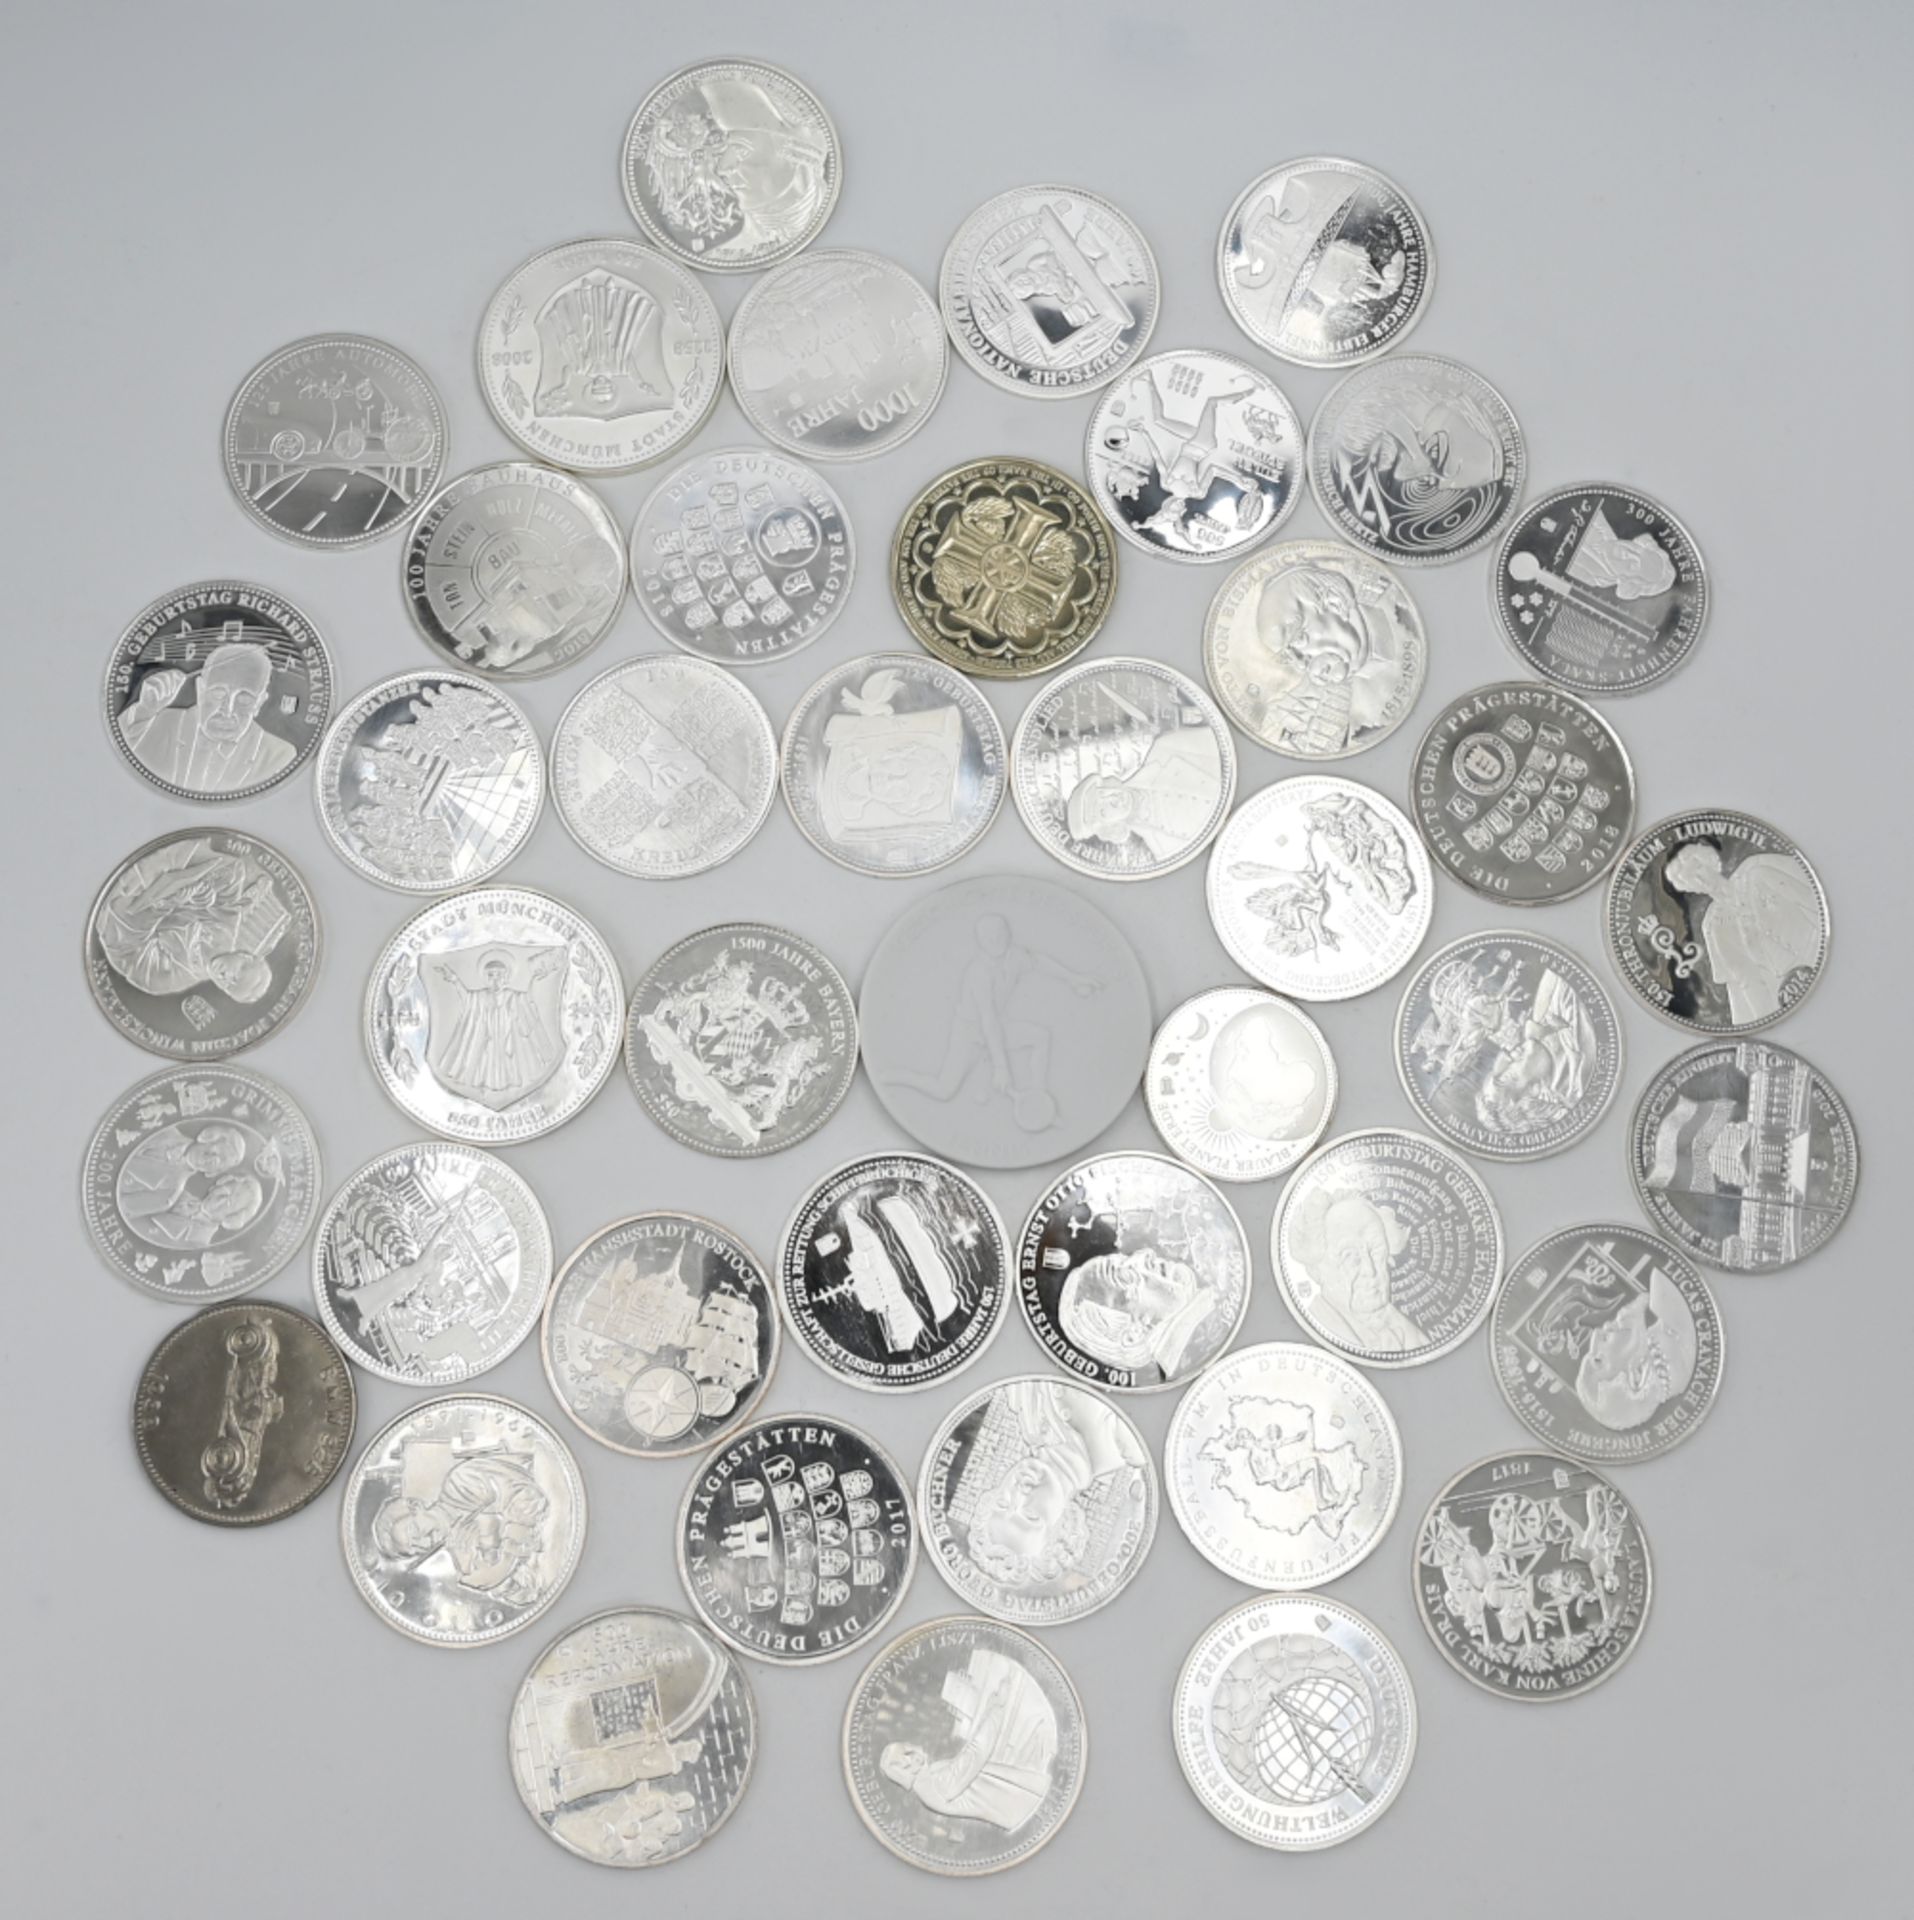 1 Konv. Medaillen, wohl größtenteils Silber, z.B. zum Jubiläum 1500 Jahre Bayern, Sammeleditionen ve